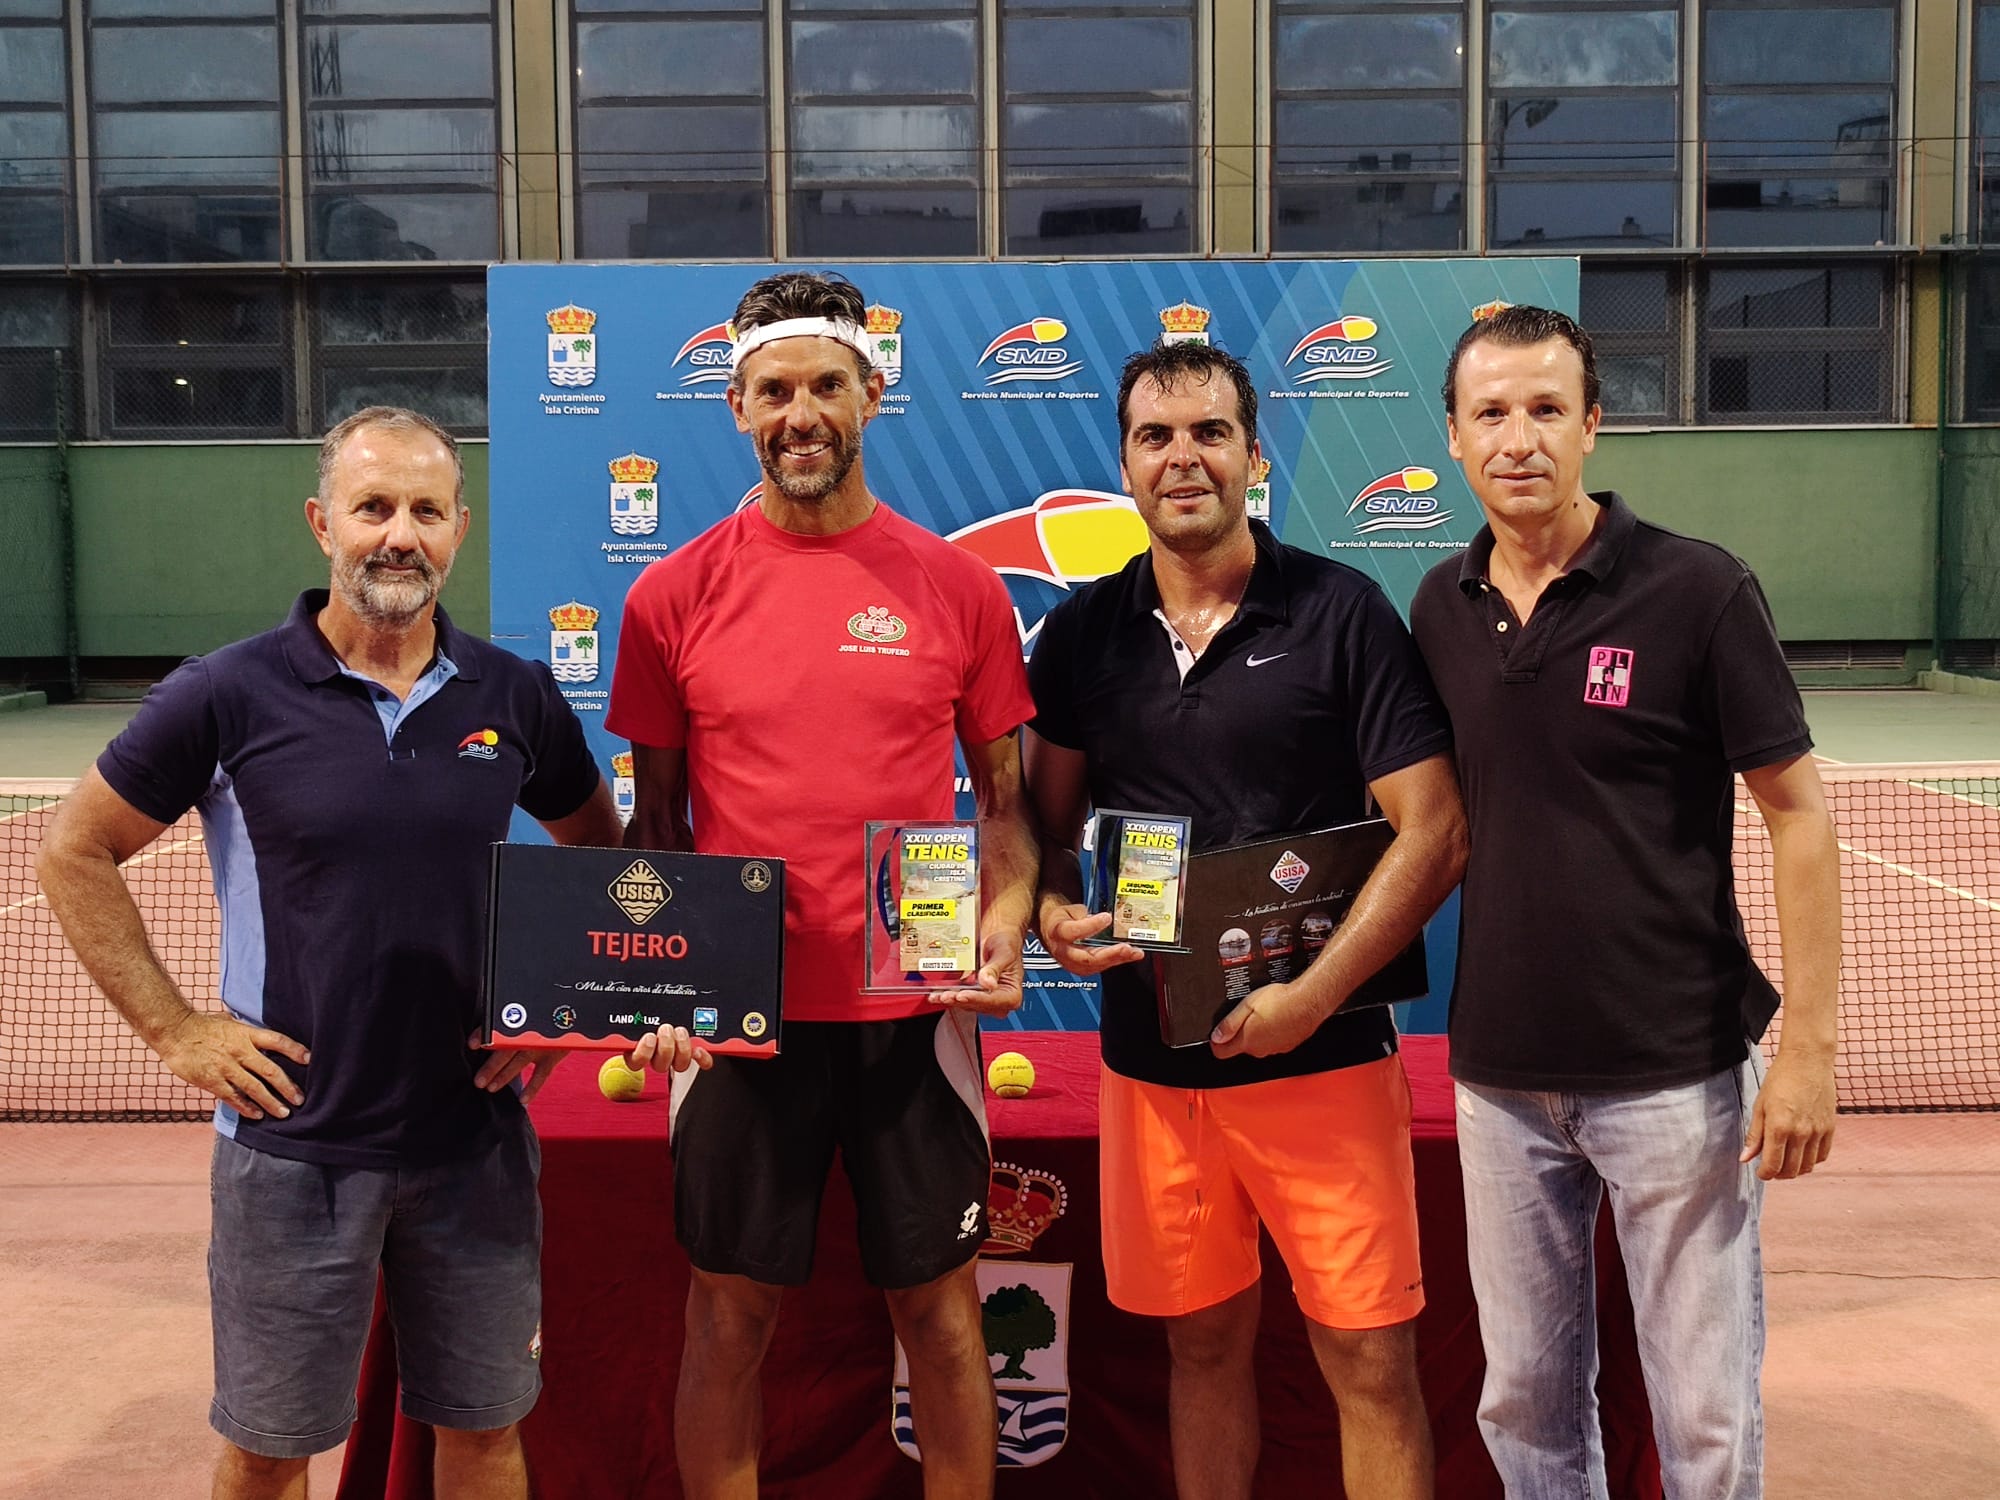 El cartayero José Luis Trufero se alza don el XXIV Open de Tenis “Ciudad de Isla Cristina”